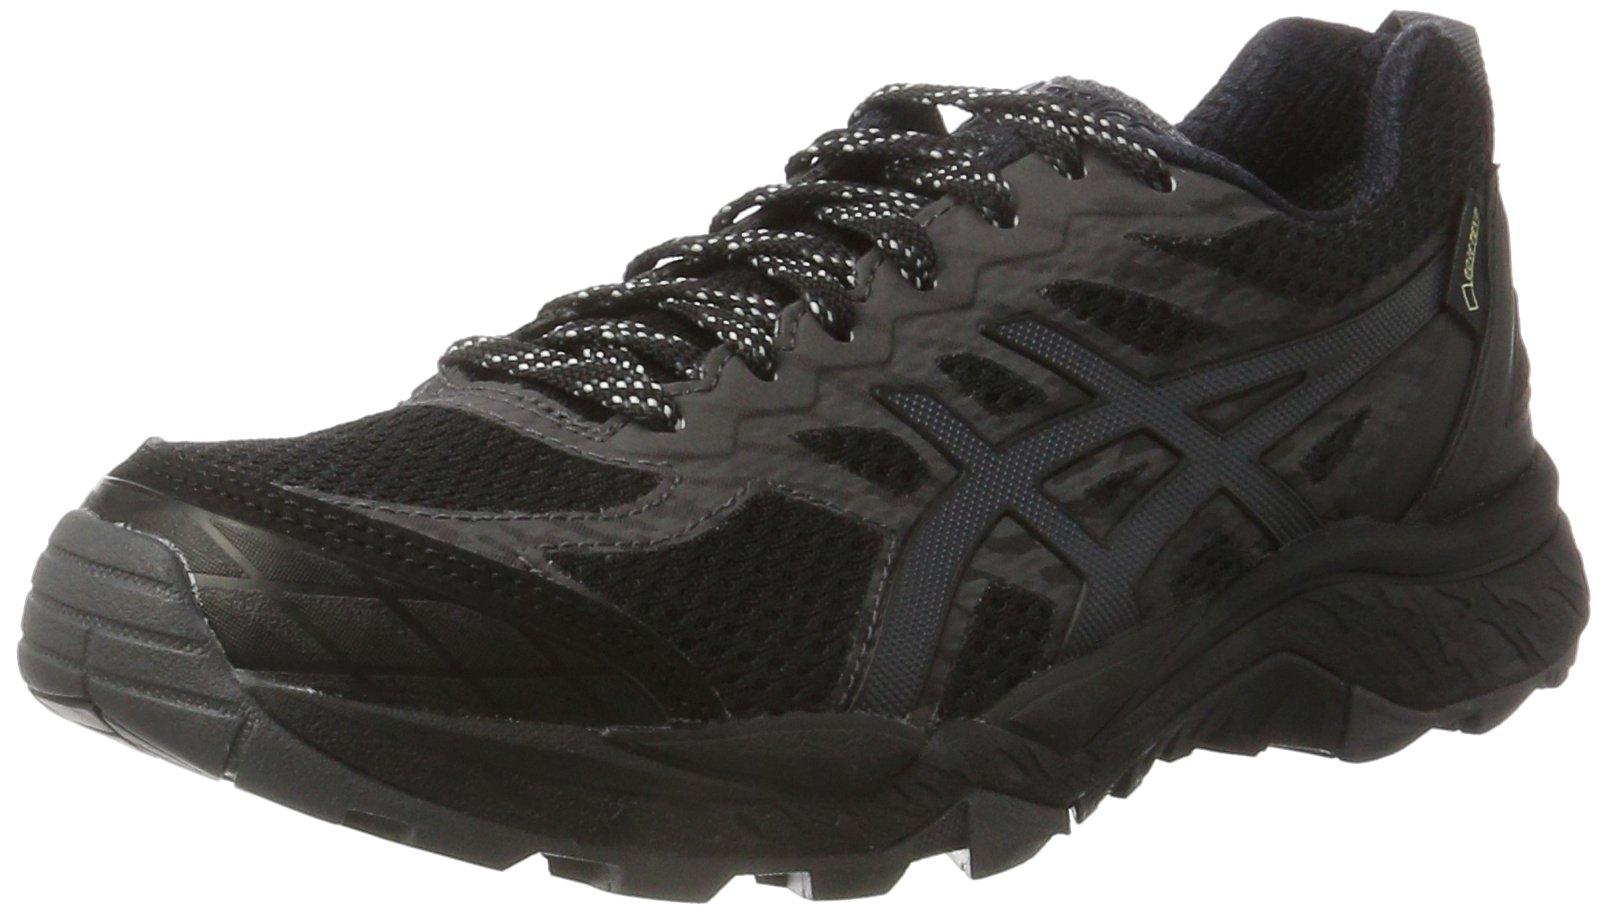 Asics Gel-fujitrabuco 5 G-tx Trail Running Shoes in Black/Dark Grey (Black)  - Save 69% | Lyst UK